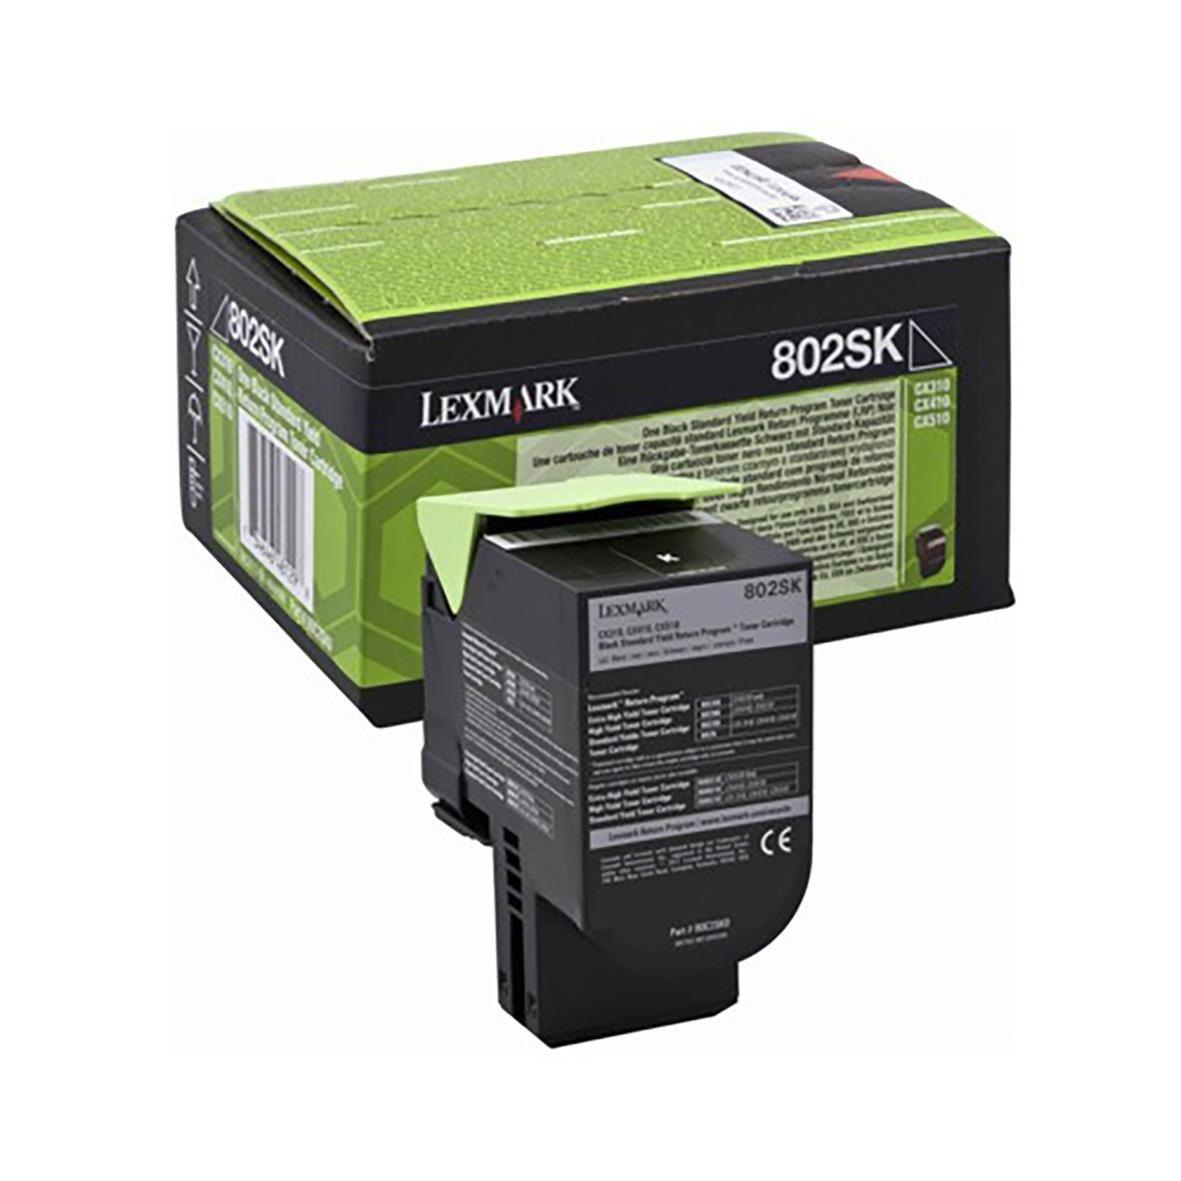 Lasertoner Lexmark 802SK 2500 Sidor 80C2SK0 Svart